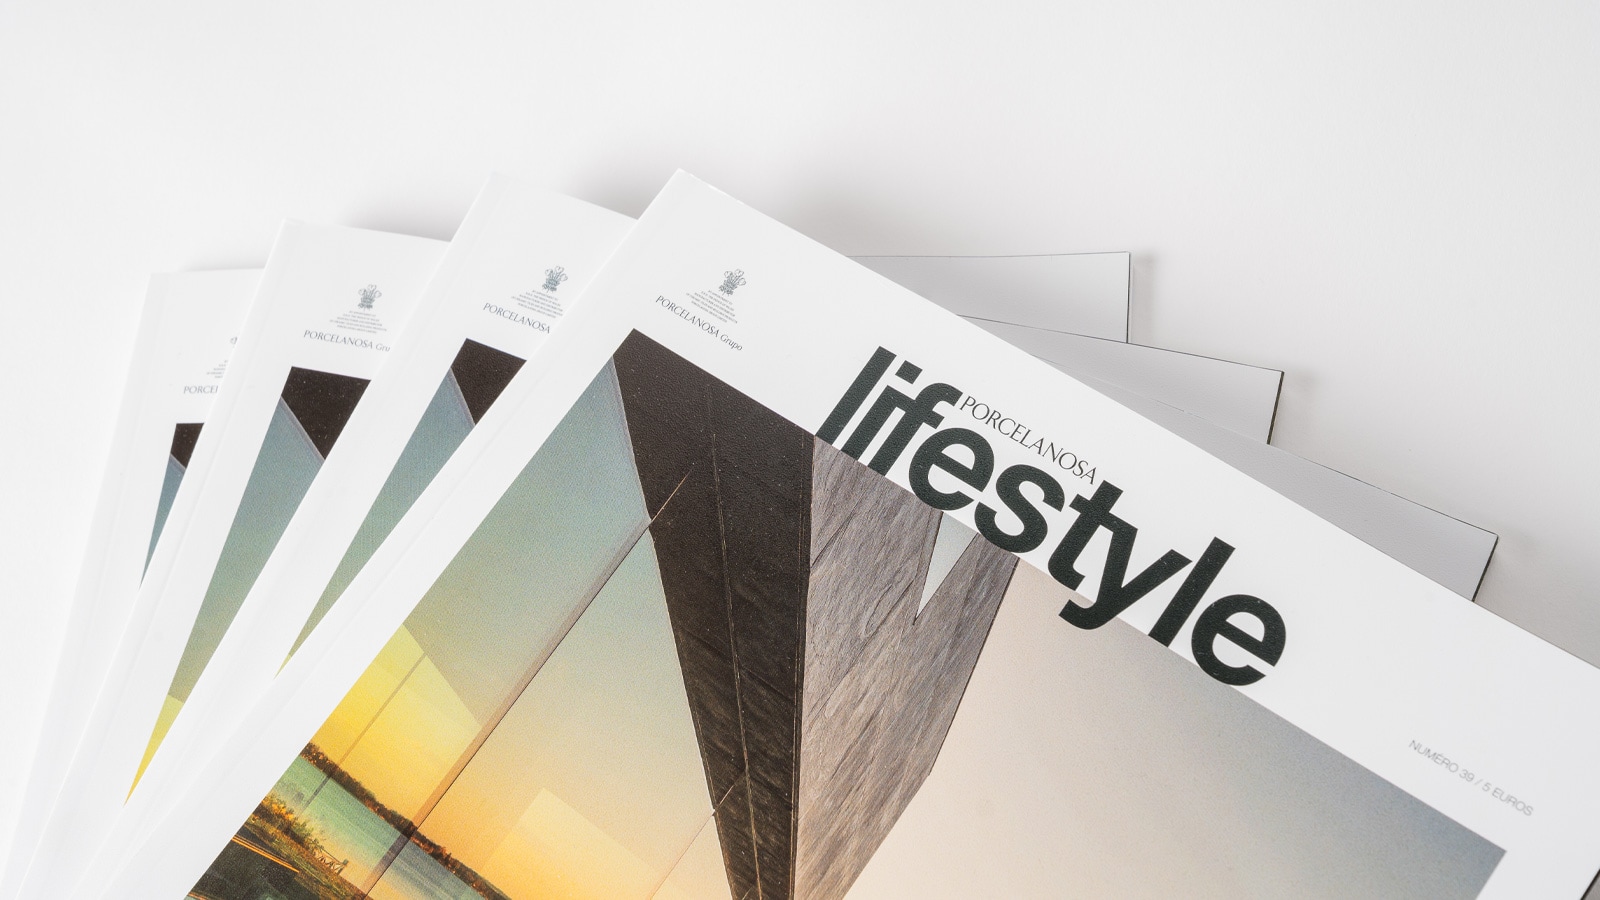 La revista ‘Lifestyle’ lleva los diseños de Calatrava y Lázaro Rosa-Violán a sus páginas